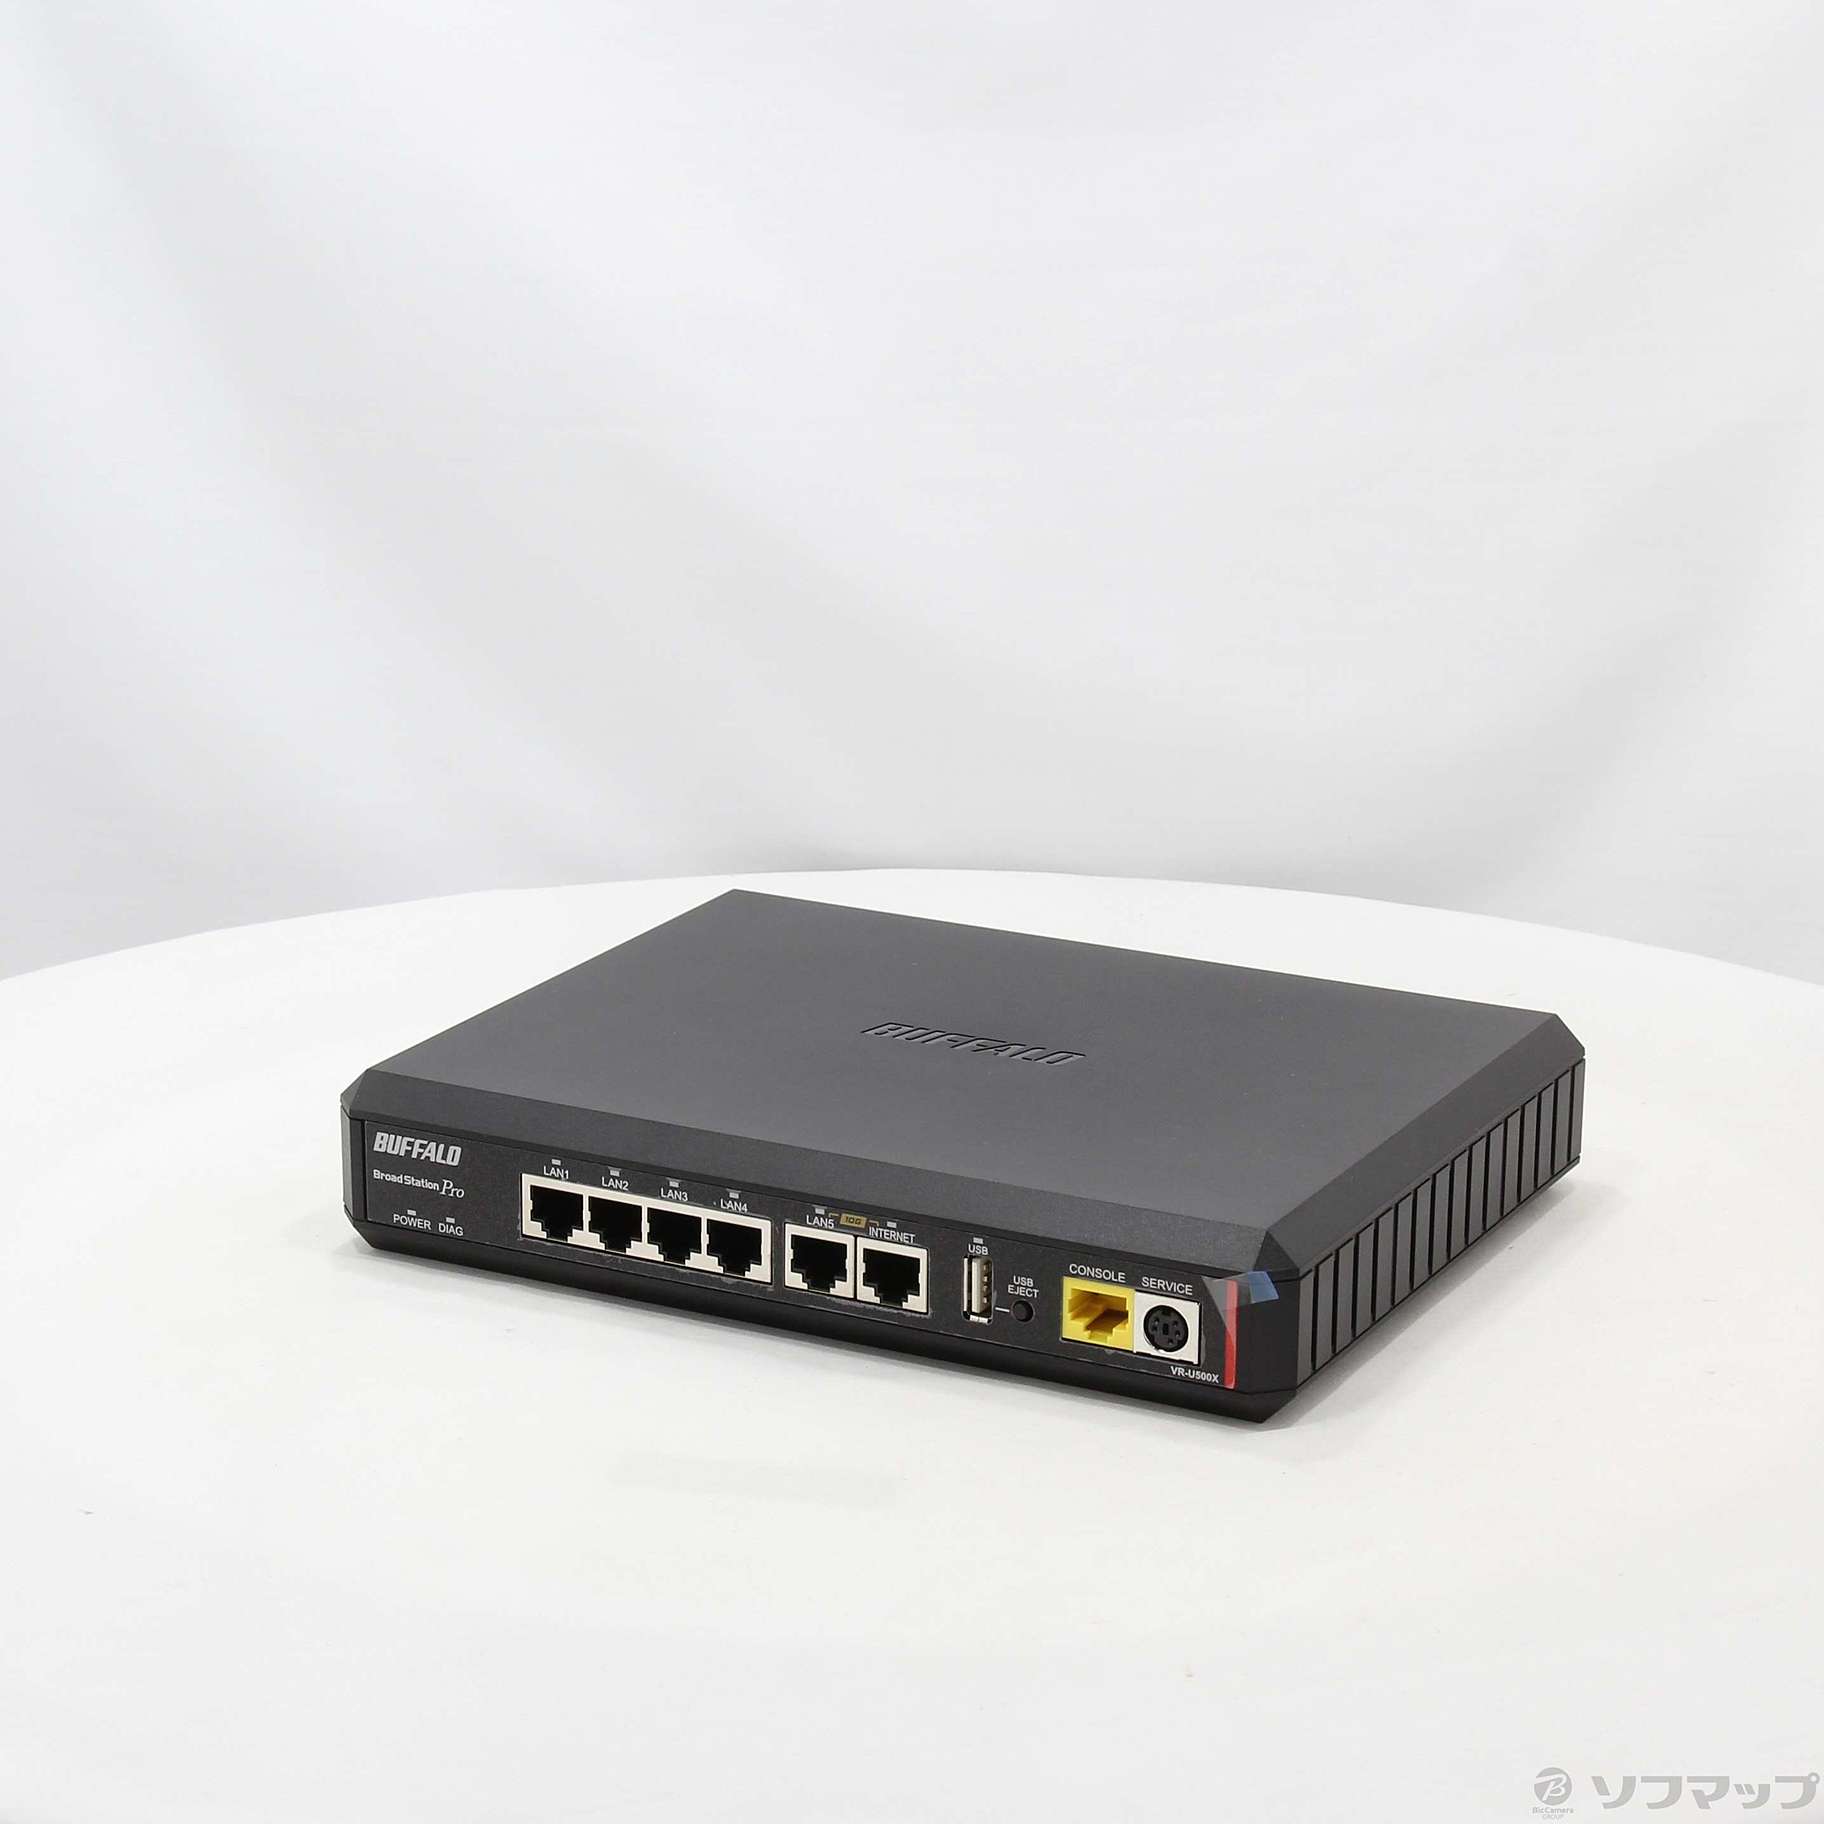 バッファロー VR-U500X 法人向け 有線VPNルーター - パソコン周辺機器